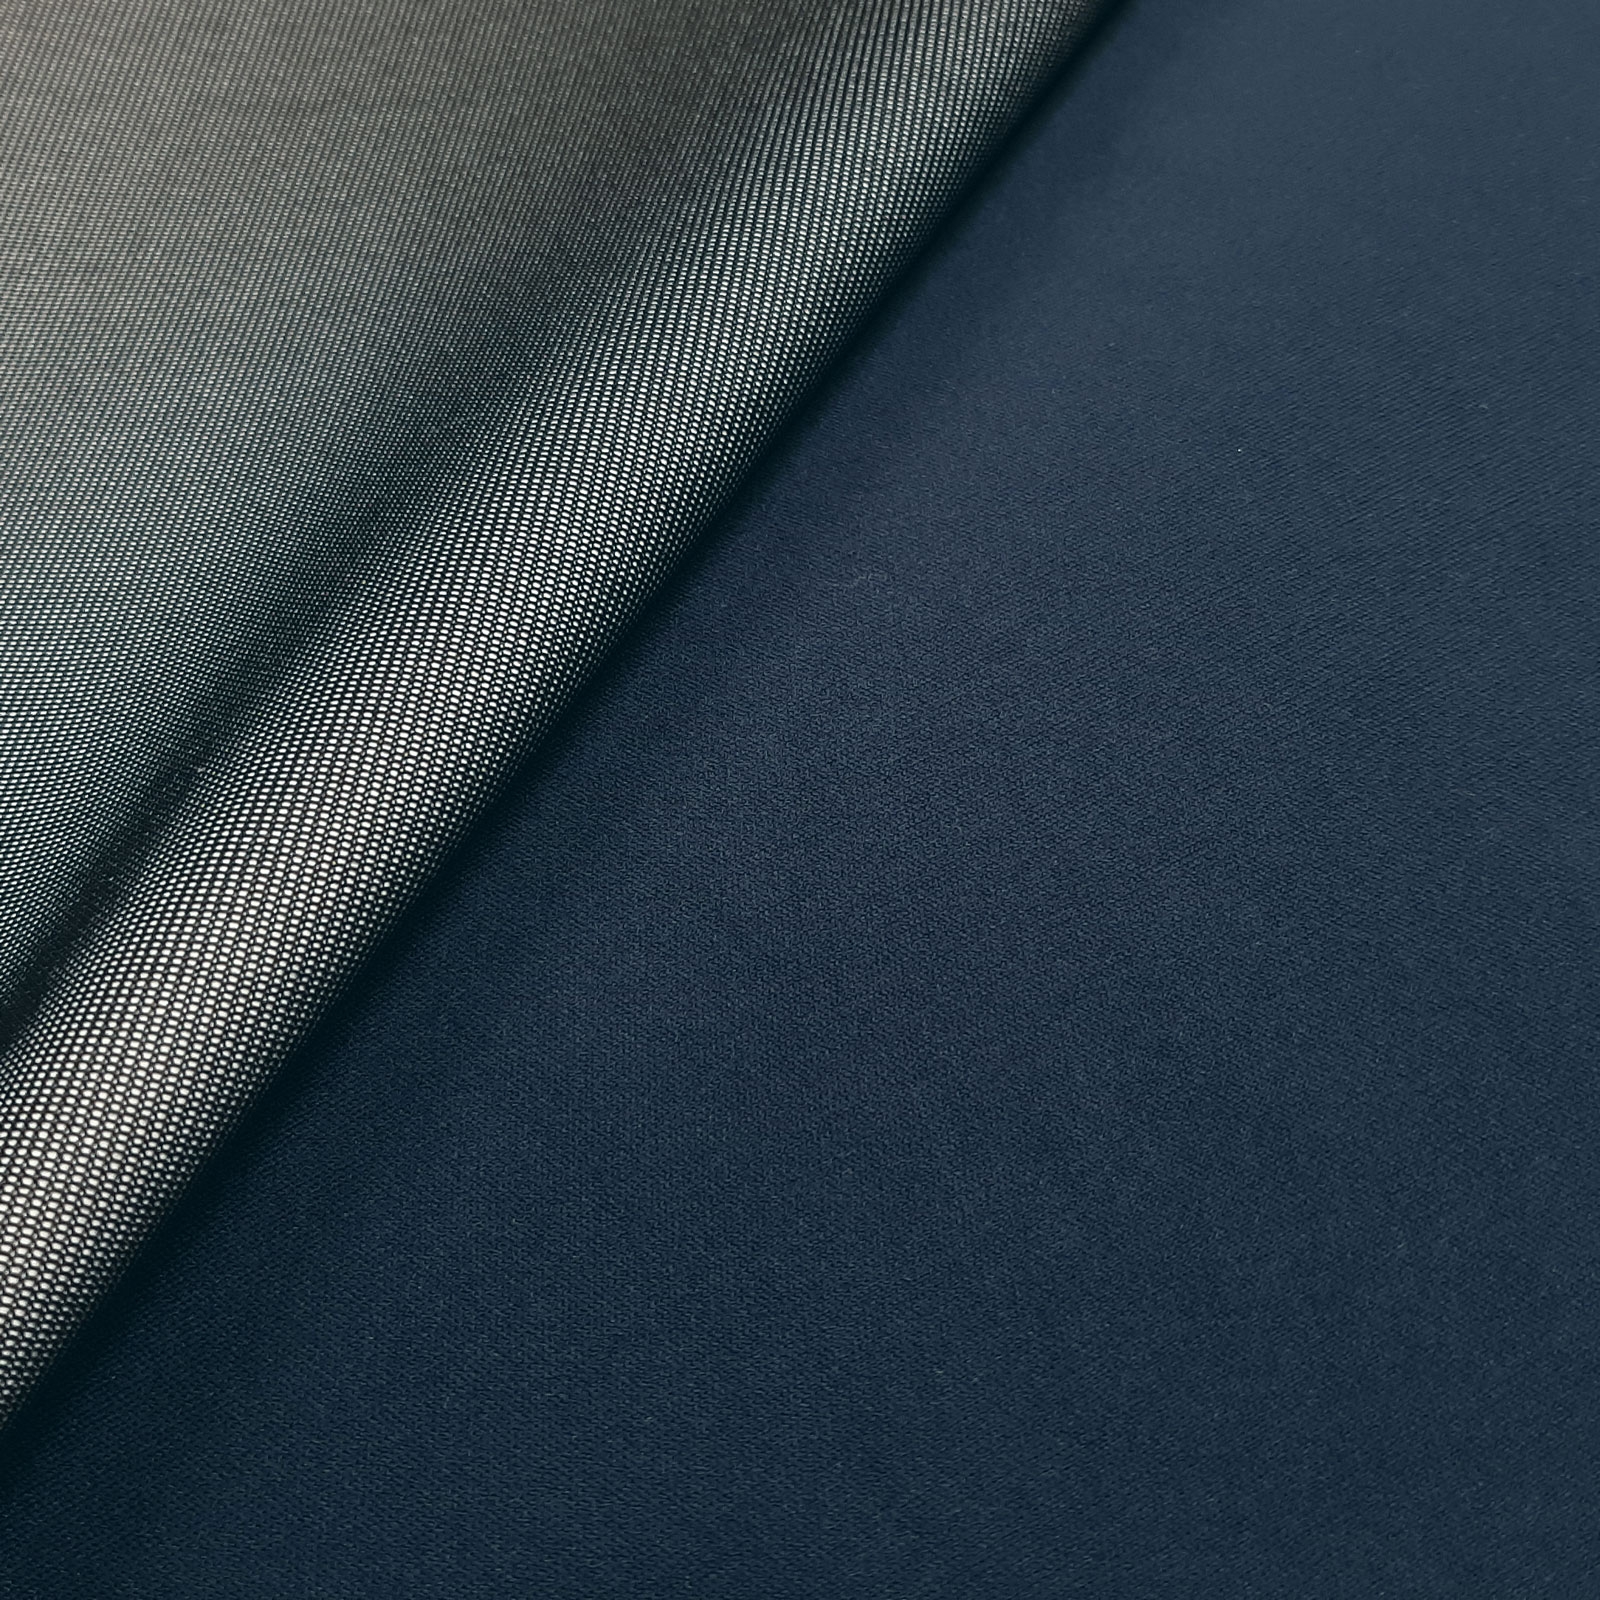 Stratos Soft - laminado de 3 capas - azul oscuro